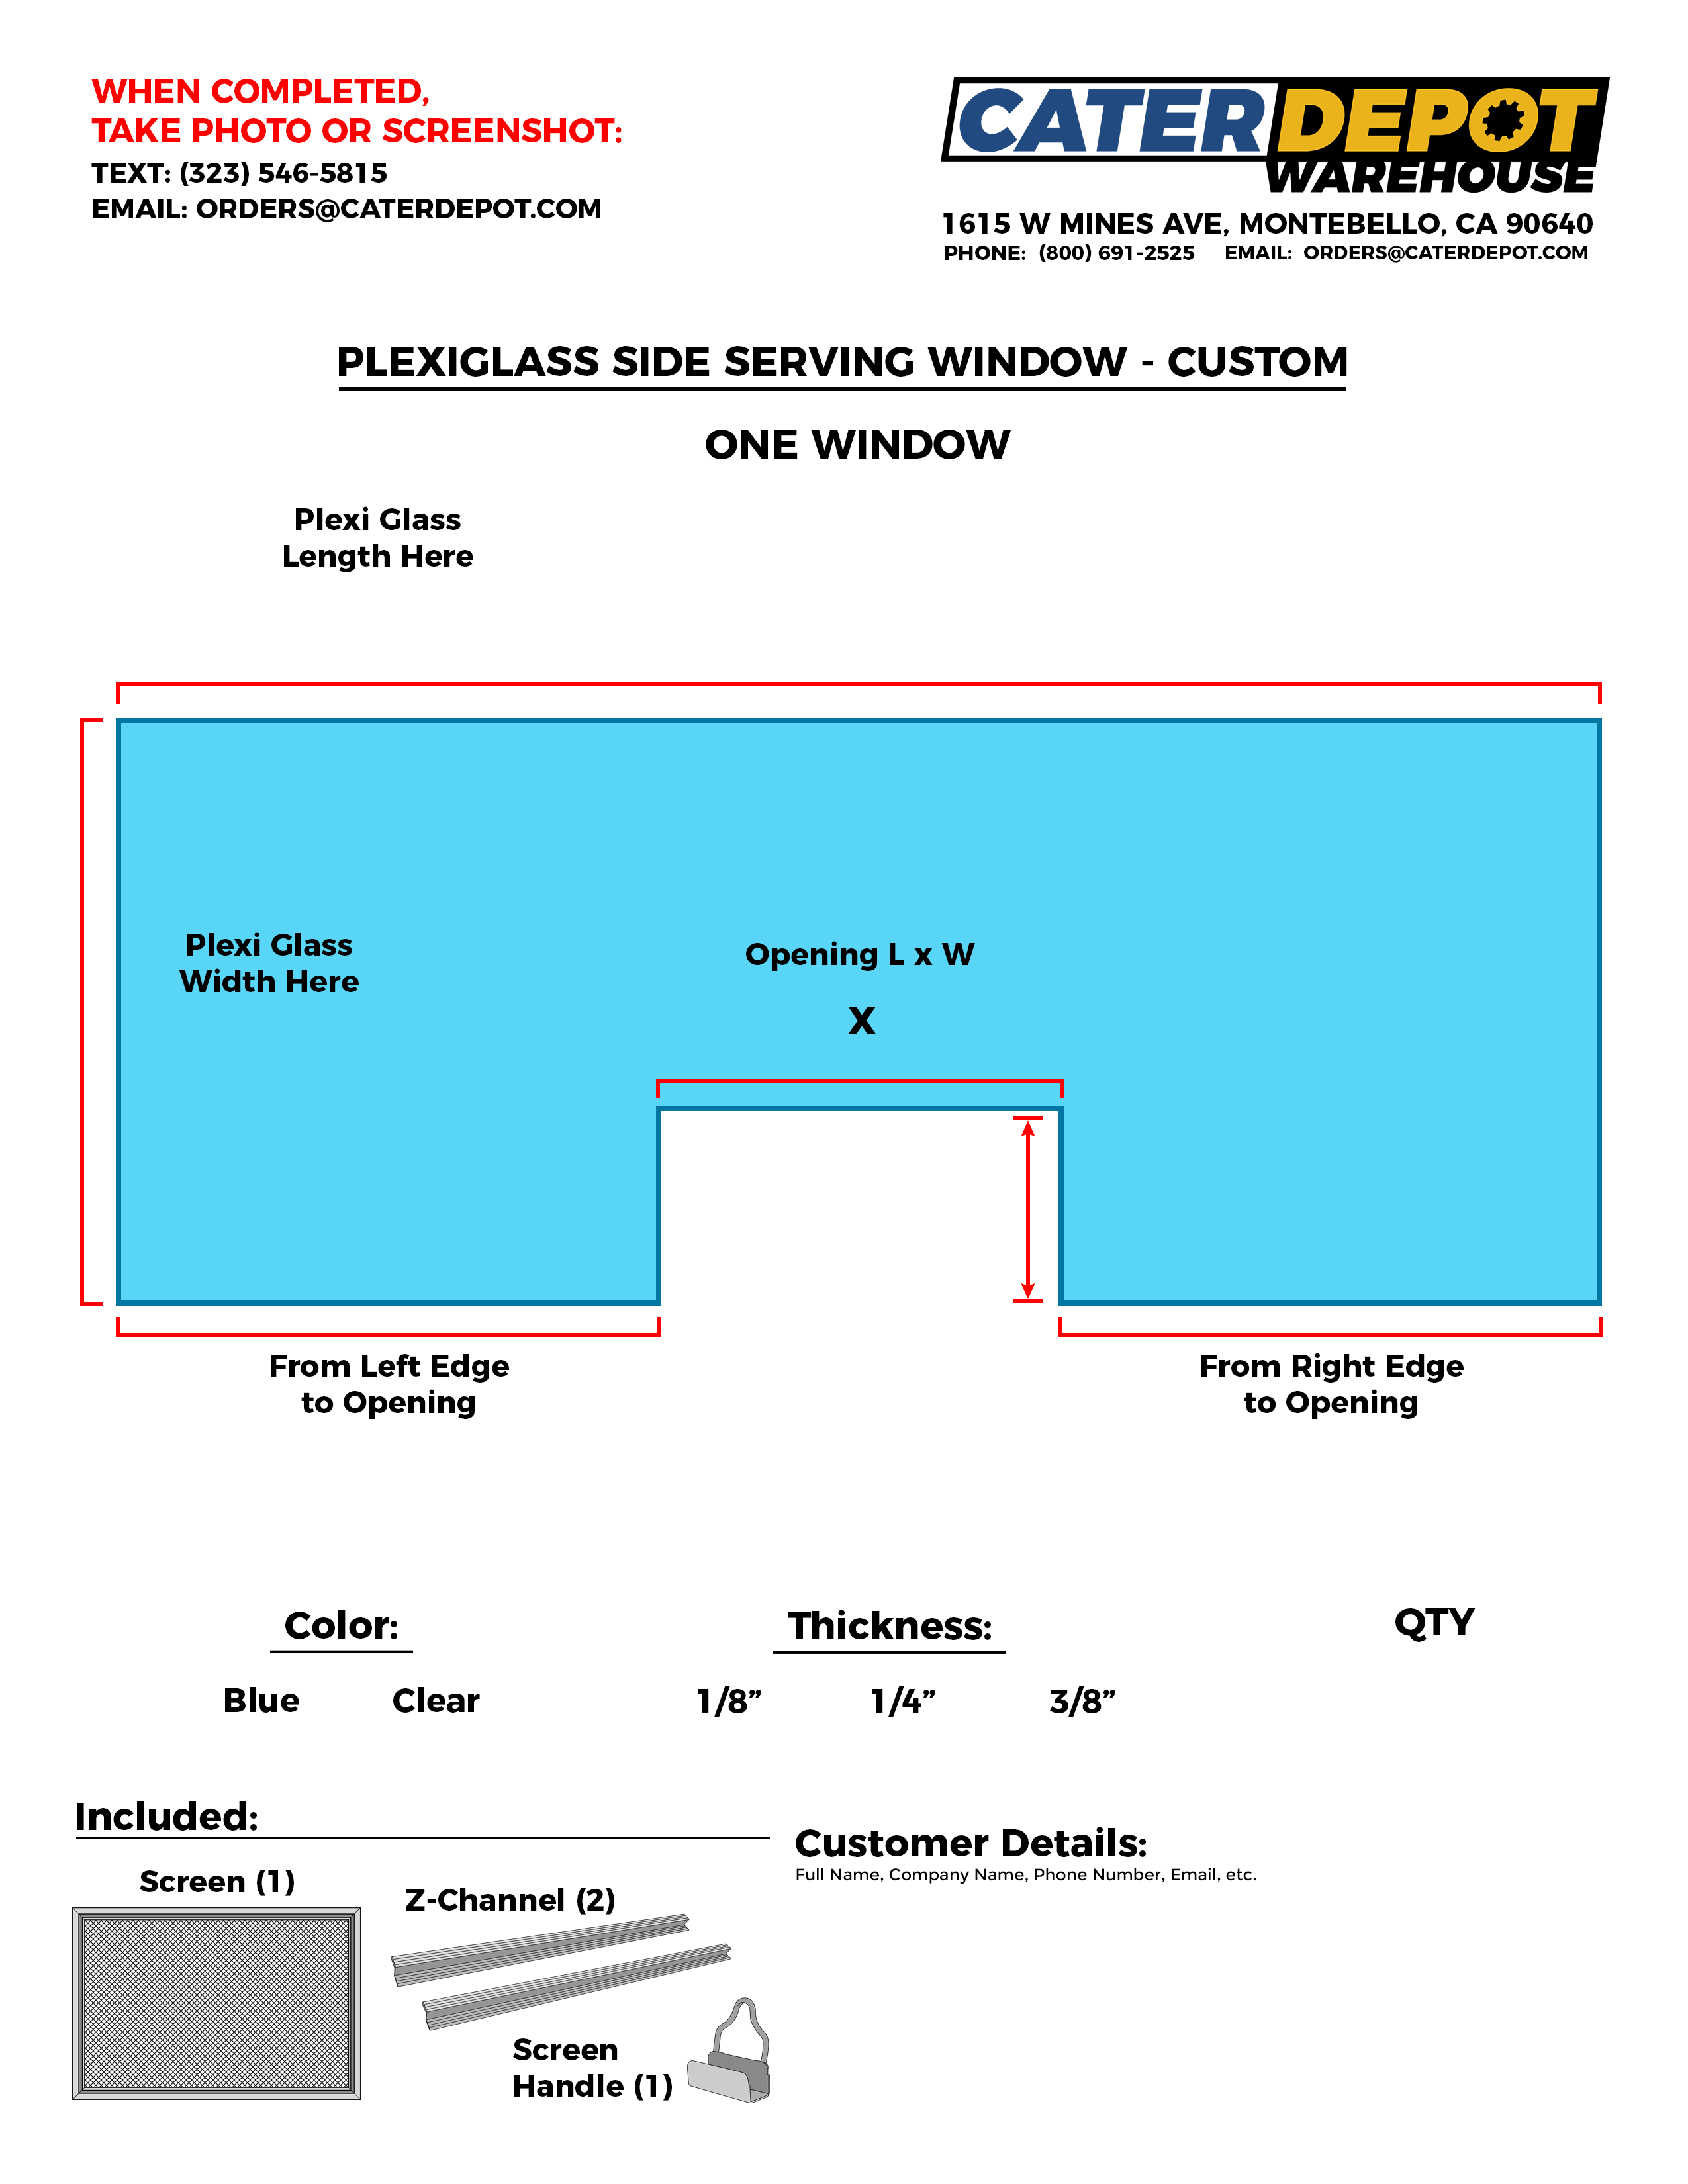 Custom Plexiglass Side Serving Window - One Window